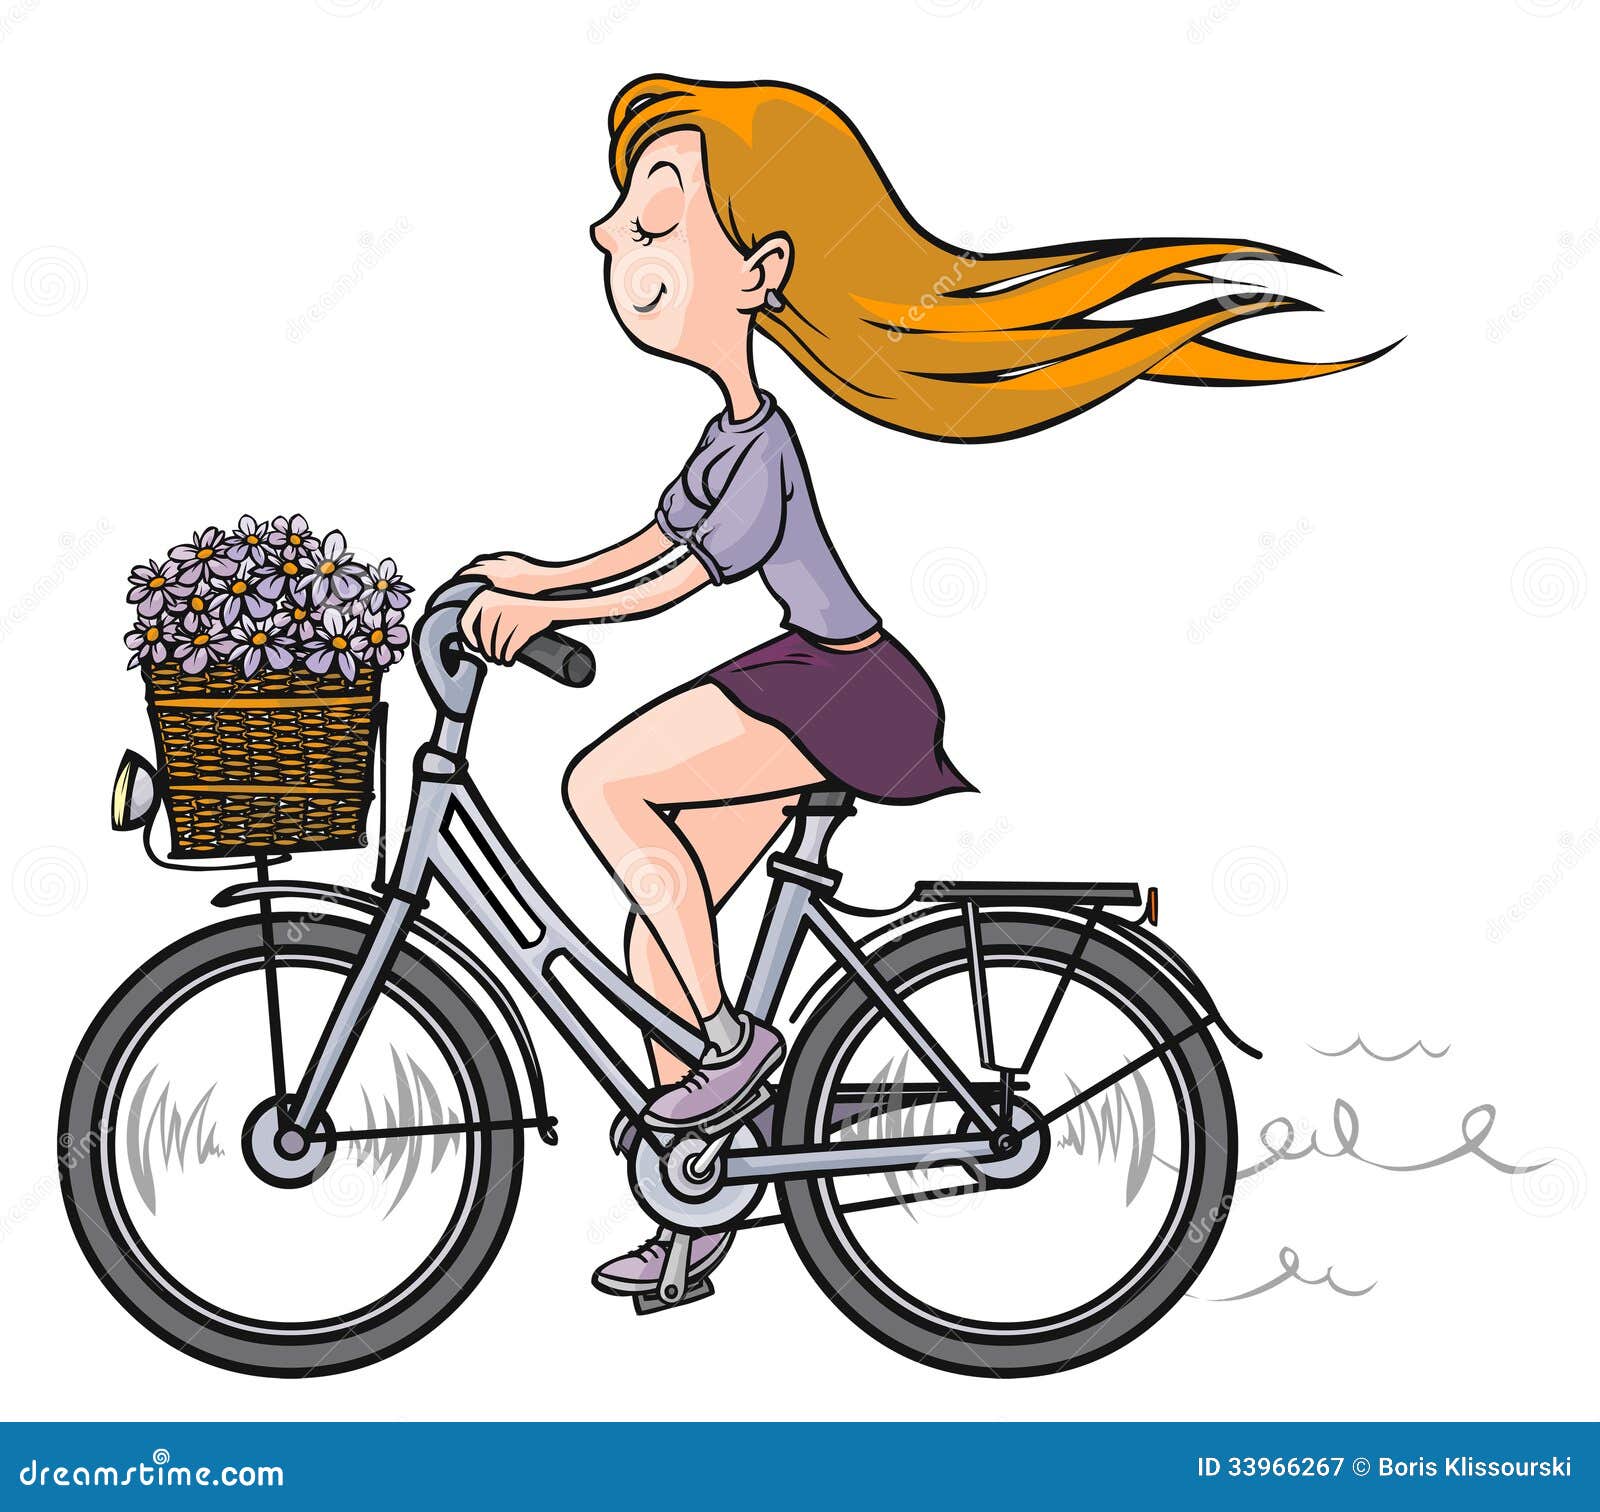 girl on a bike clipart - photo #16